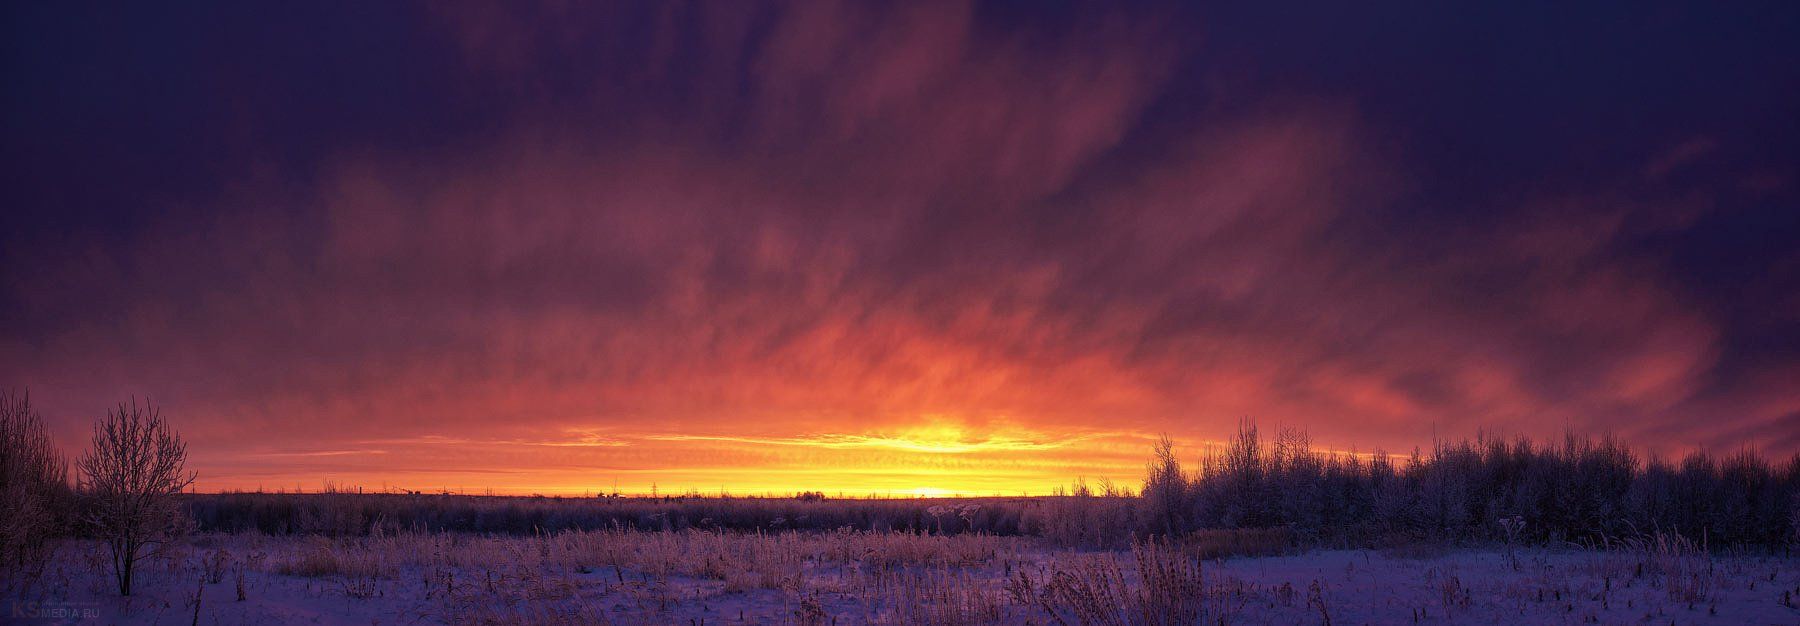 Clouds, Sunrise, Winter, Снегзима, Сергей Калабушкин